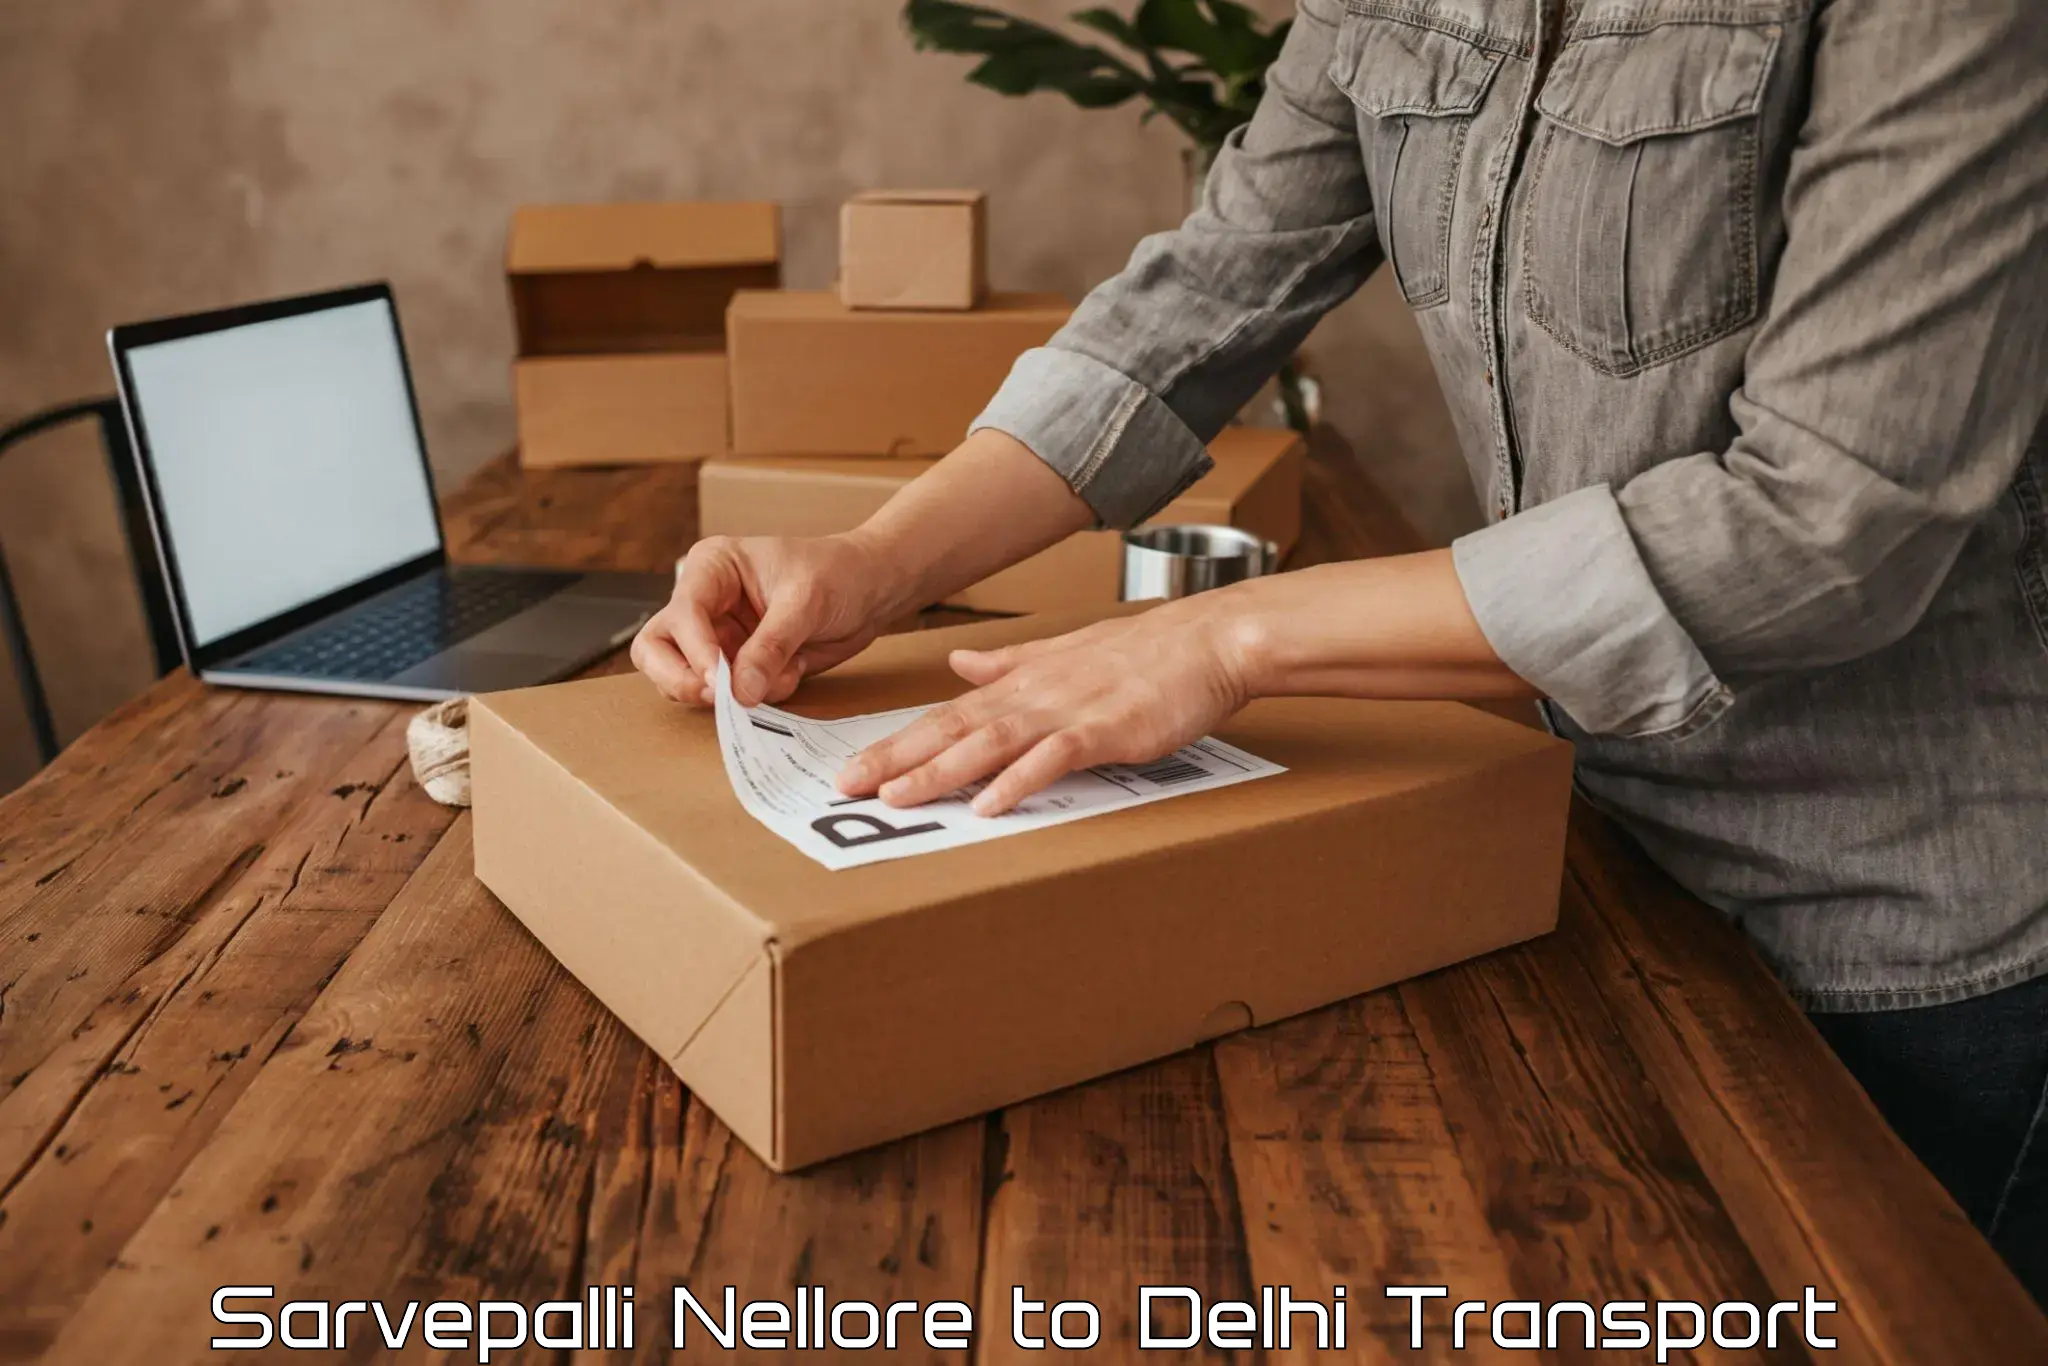 Cargo train transport services Sarvepalli Nellore to Delhi